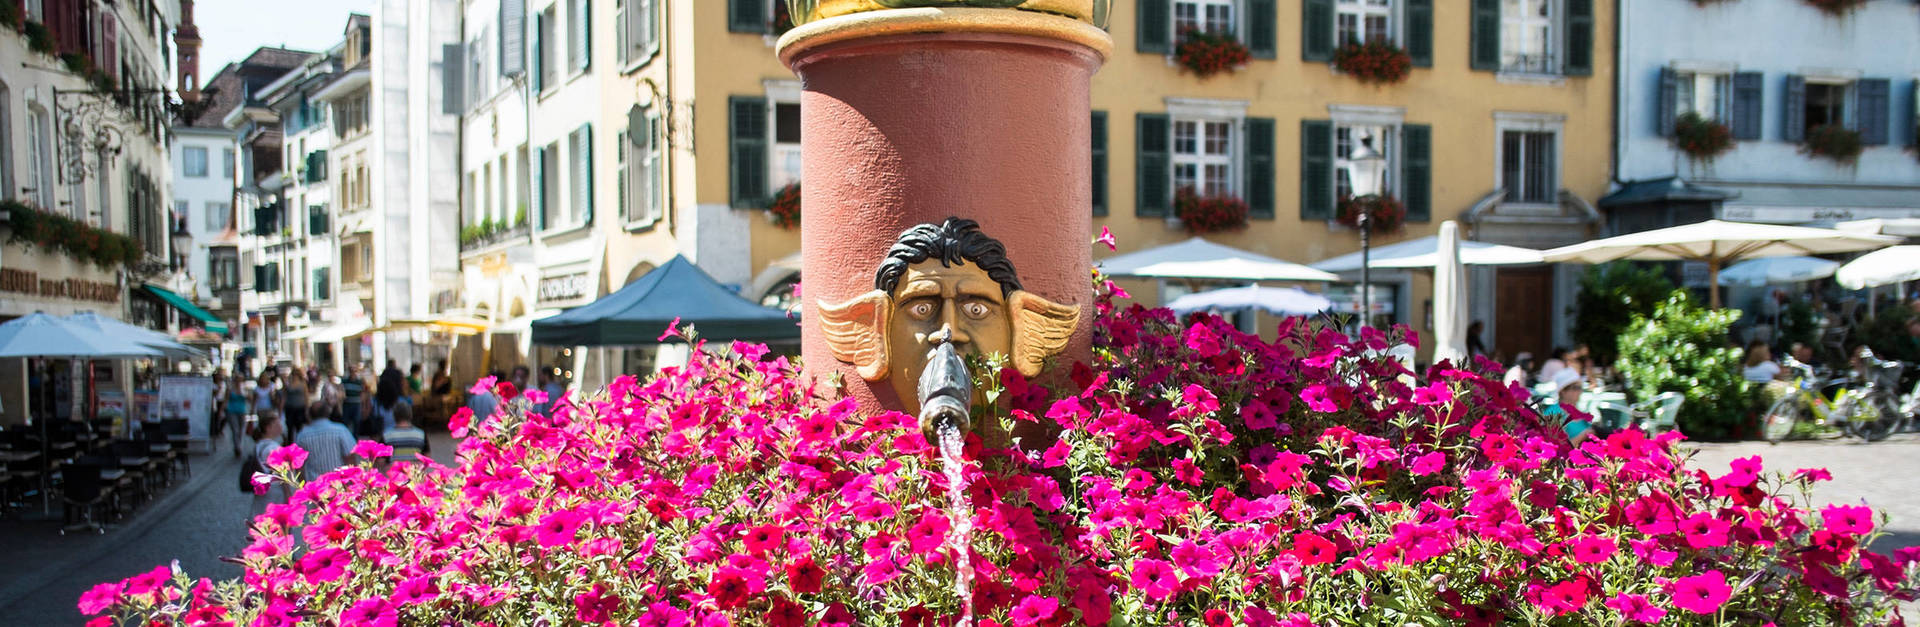 Solothurn entdecken mit dem H4 Hotel Solothurn - Offizielle Webseite